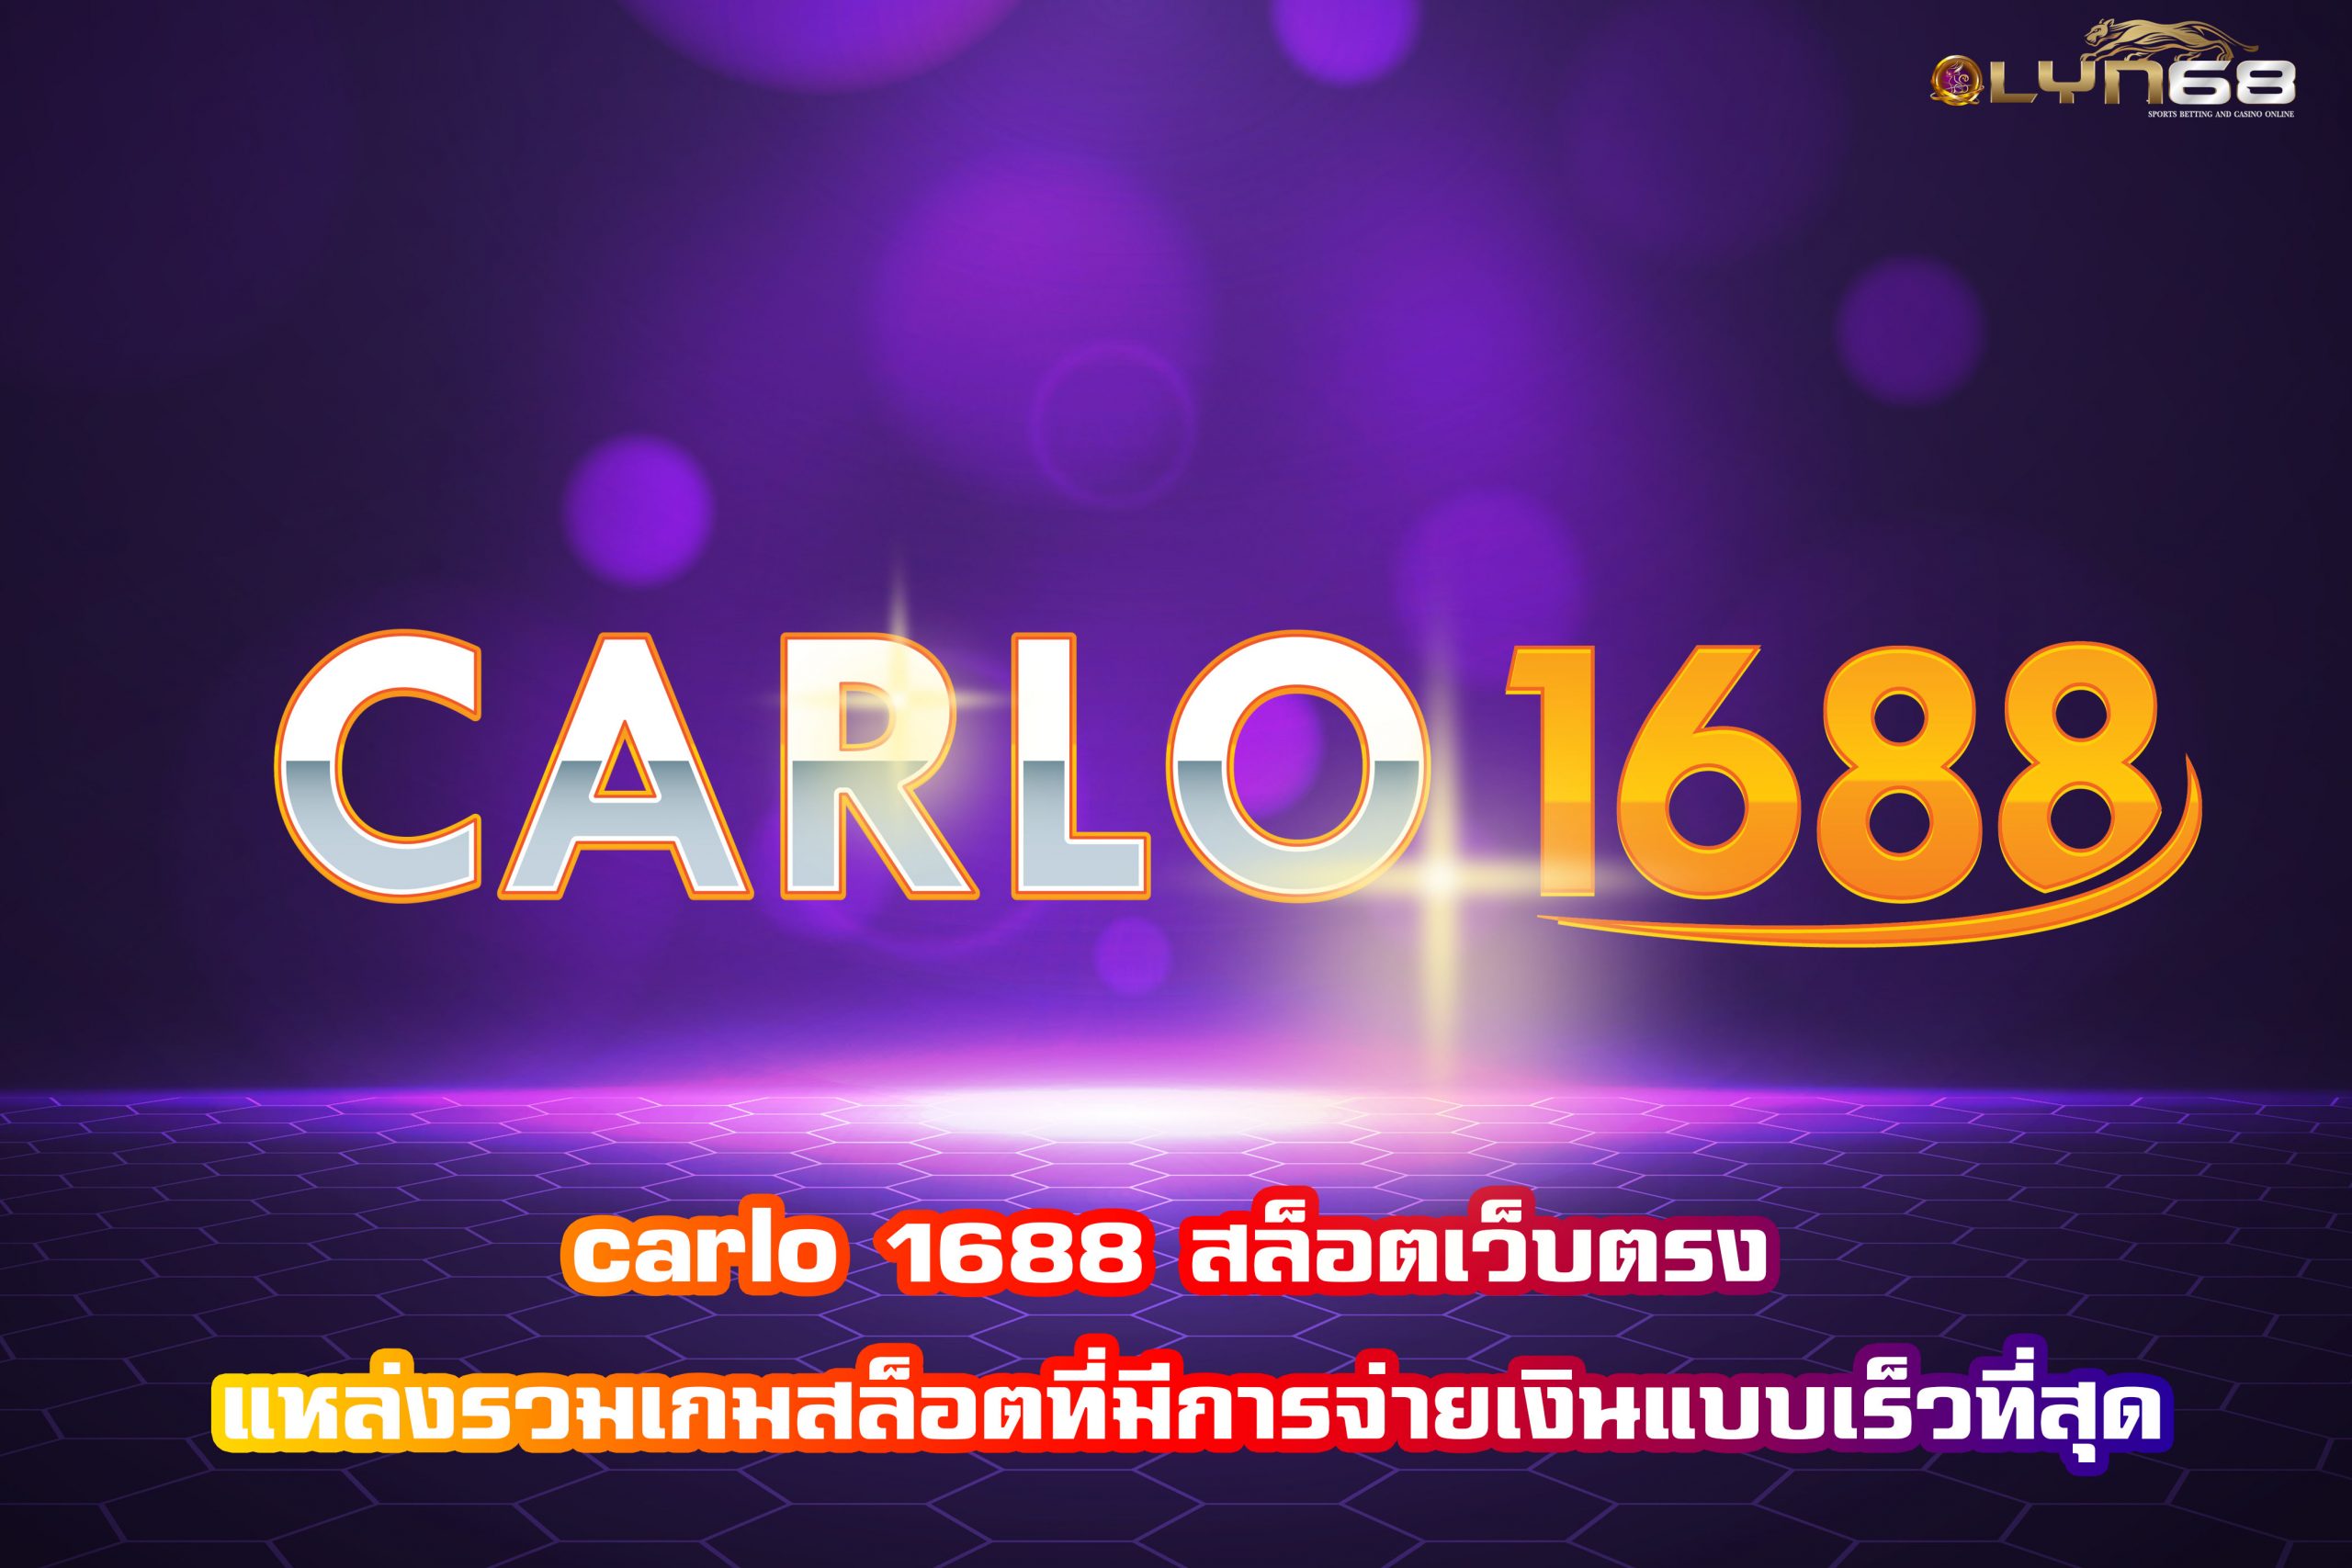 carlo 1688 สล็อตเว็บตรง แหล่งรวมเกมสล็อตที่มีการจ่ายเงินแบบเร็วที่สุด